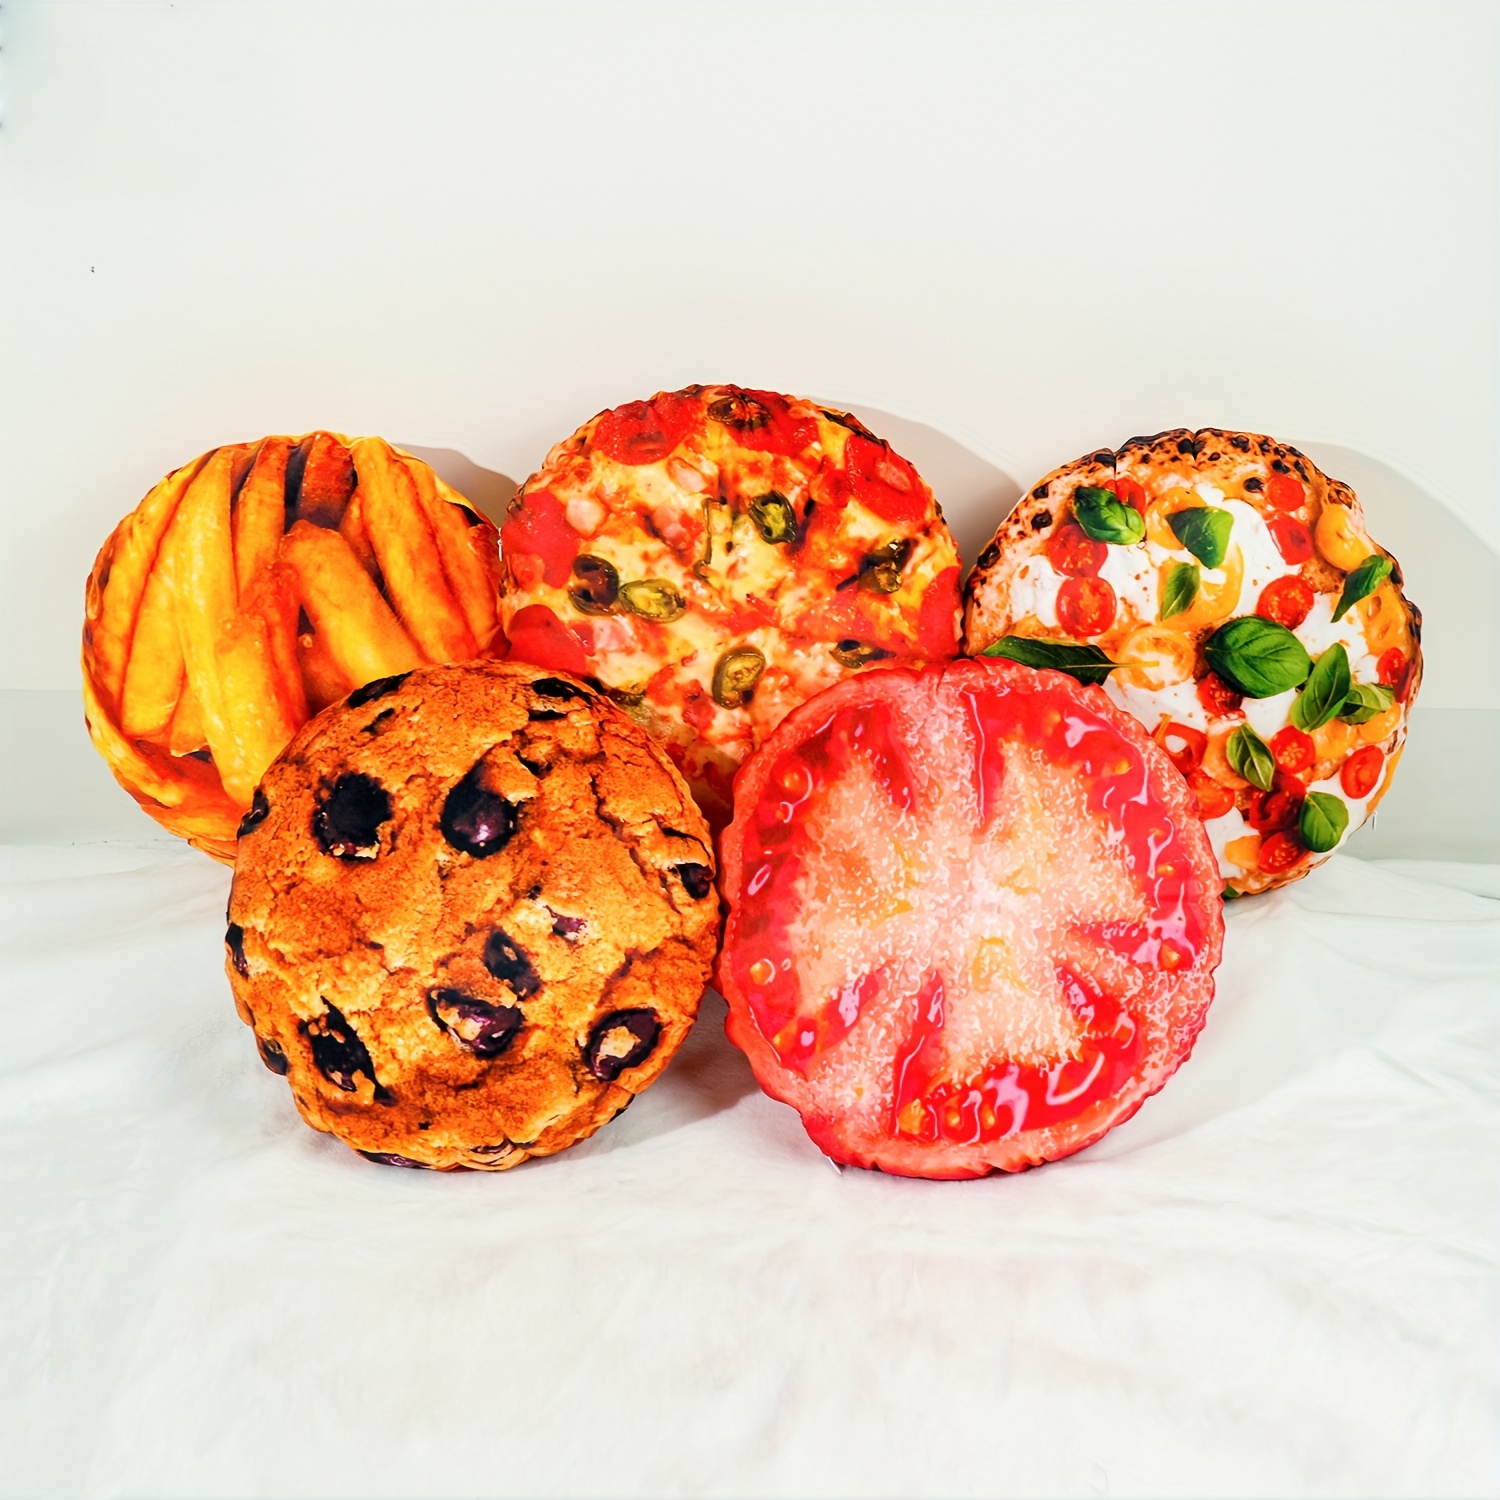 Coussins de fruits et pastèque 3D créatifs, nouveaux jouets en